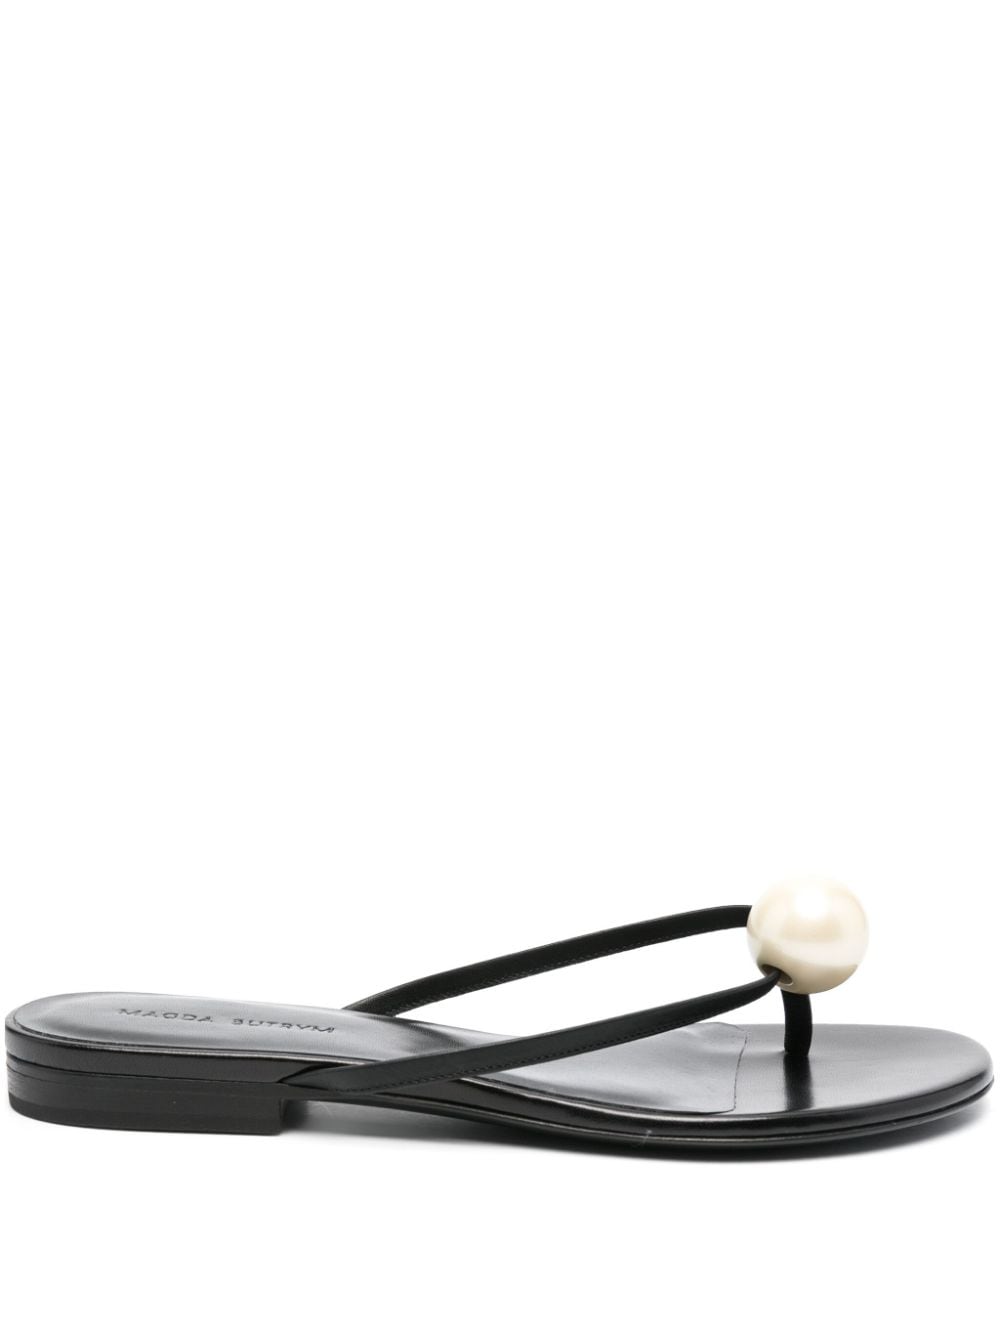 Magda Butrym pearl-embellished leather sandals - Black von Magda Butrym